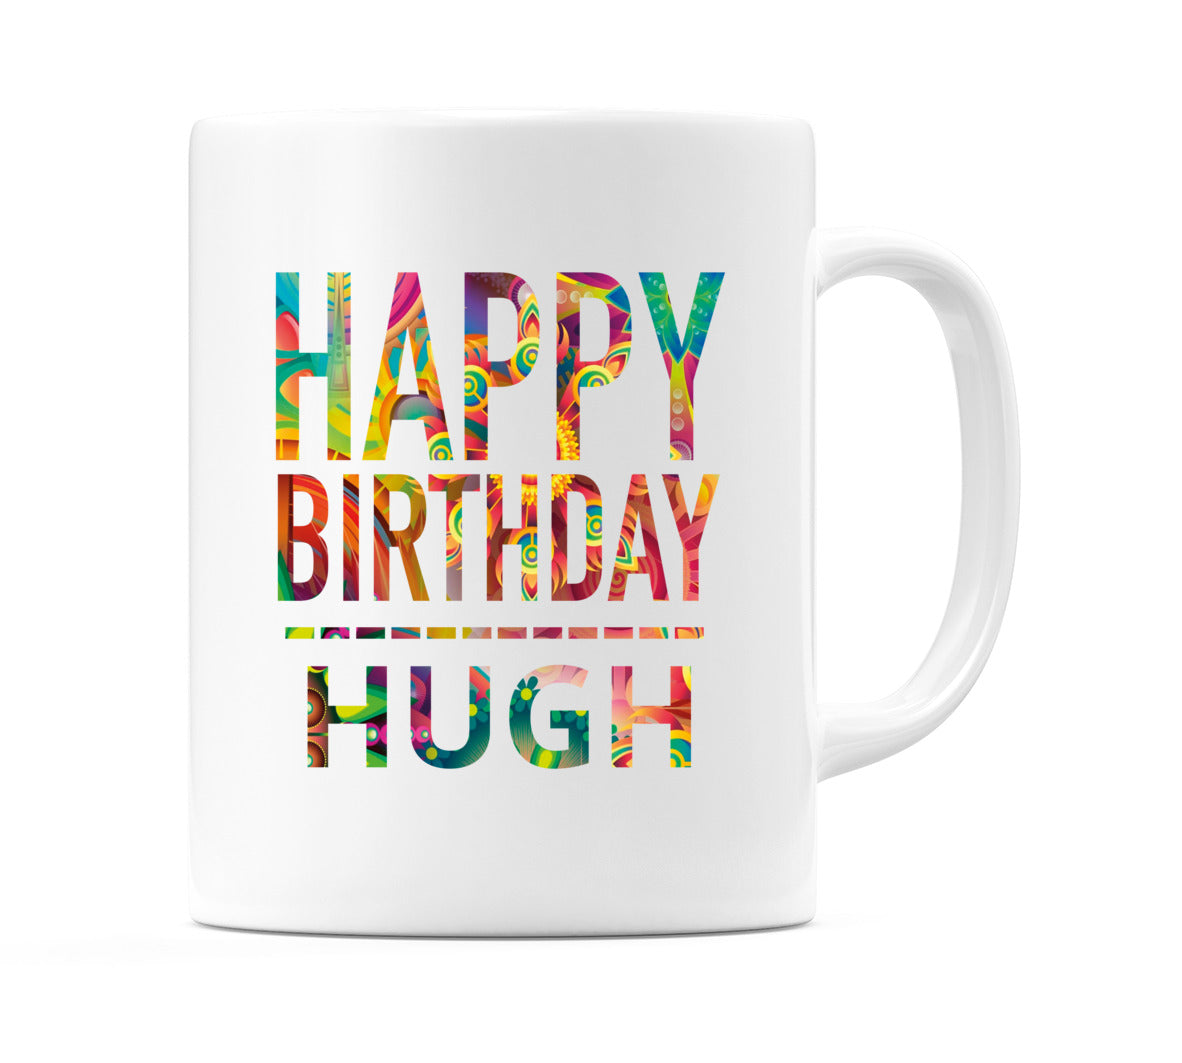 Happy Birthday Hugh (Tie Dye Effect) Mug Cup by WeDoMugs